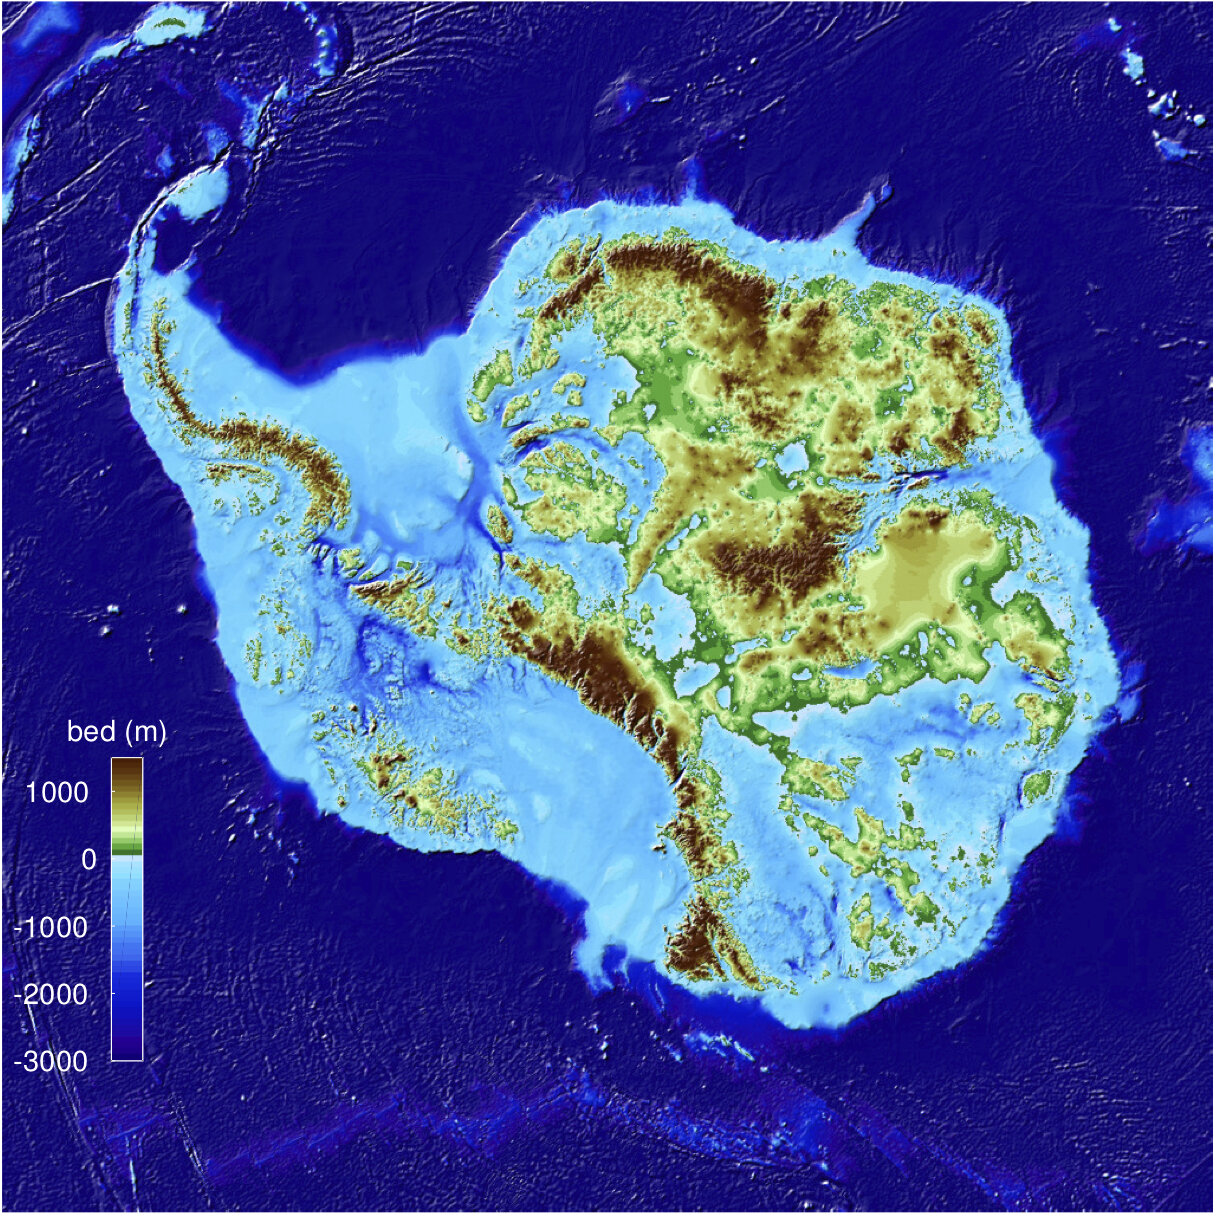 Топографическая карта Антарктиды позволила выявить самую глубокую впадину земной суши